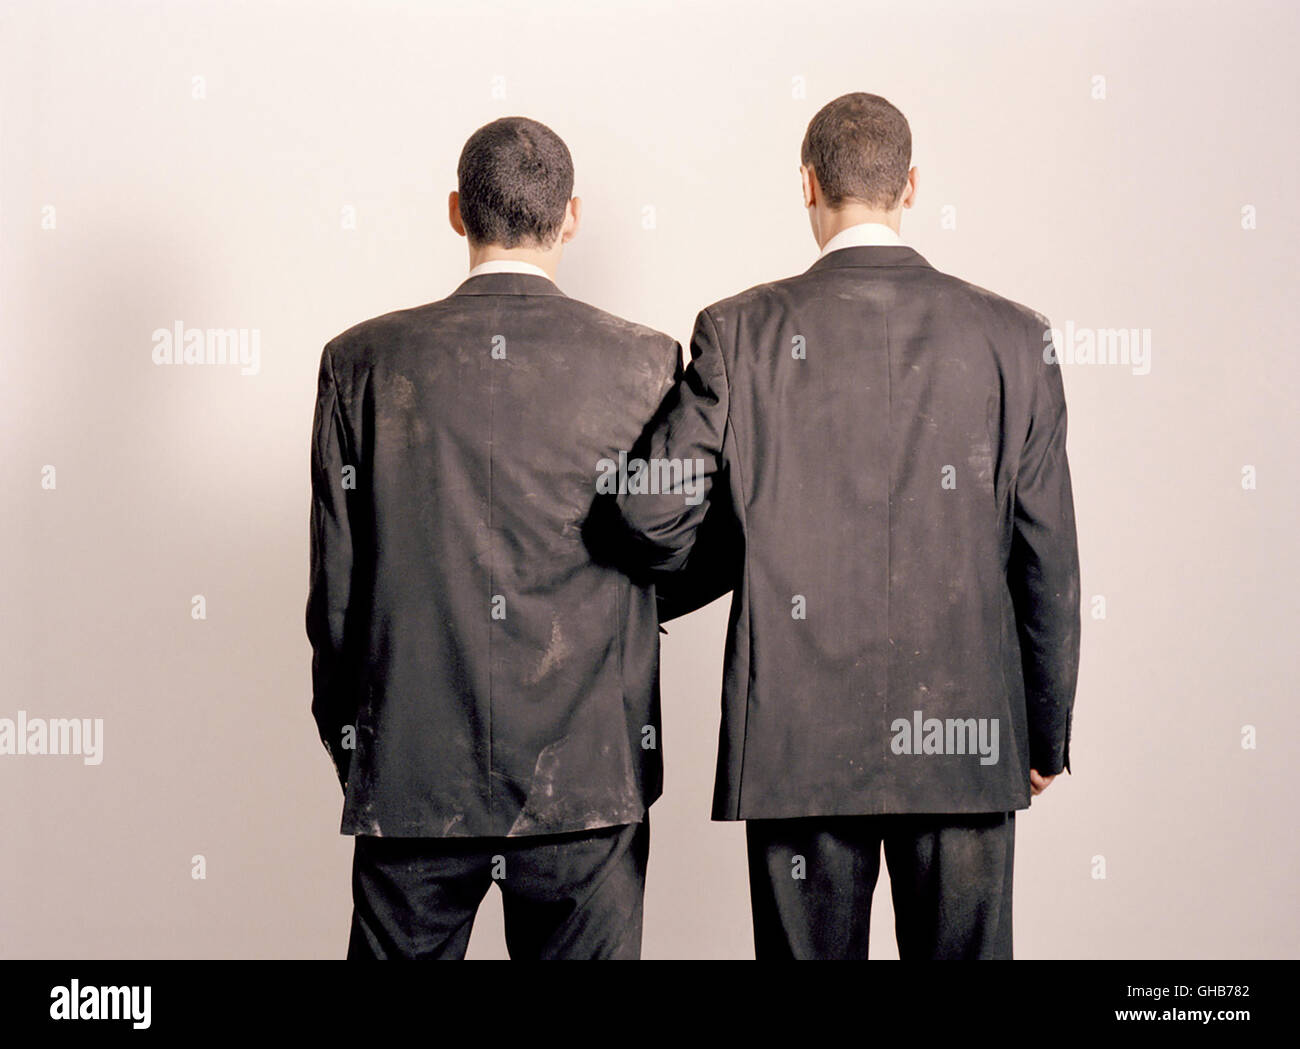 PARADISE NOW F/D/NL2005 de Hany Abu-Assad schwarze Anzüge, gekleidet gehen dit (KAIS NASHEF) et Khaled (ALI SULIMAN) in Ihrem le destin d'entgegen. Regie : Hany Abu-Assad Banque D'Images